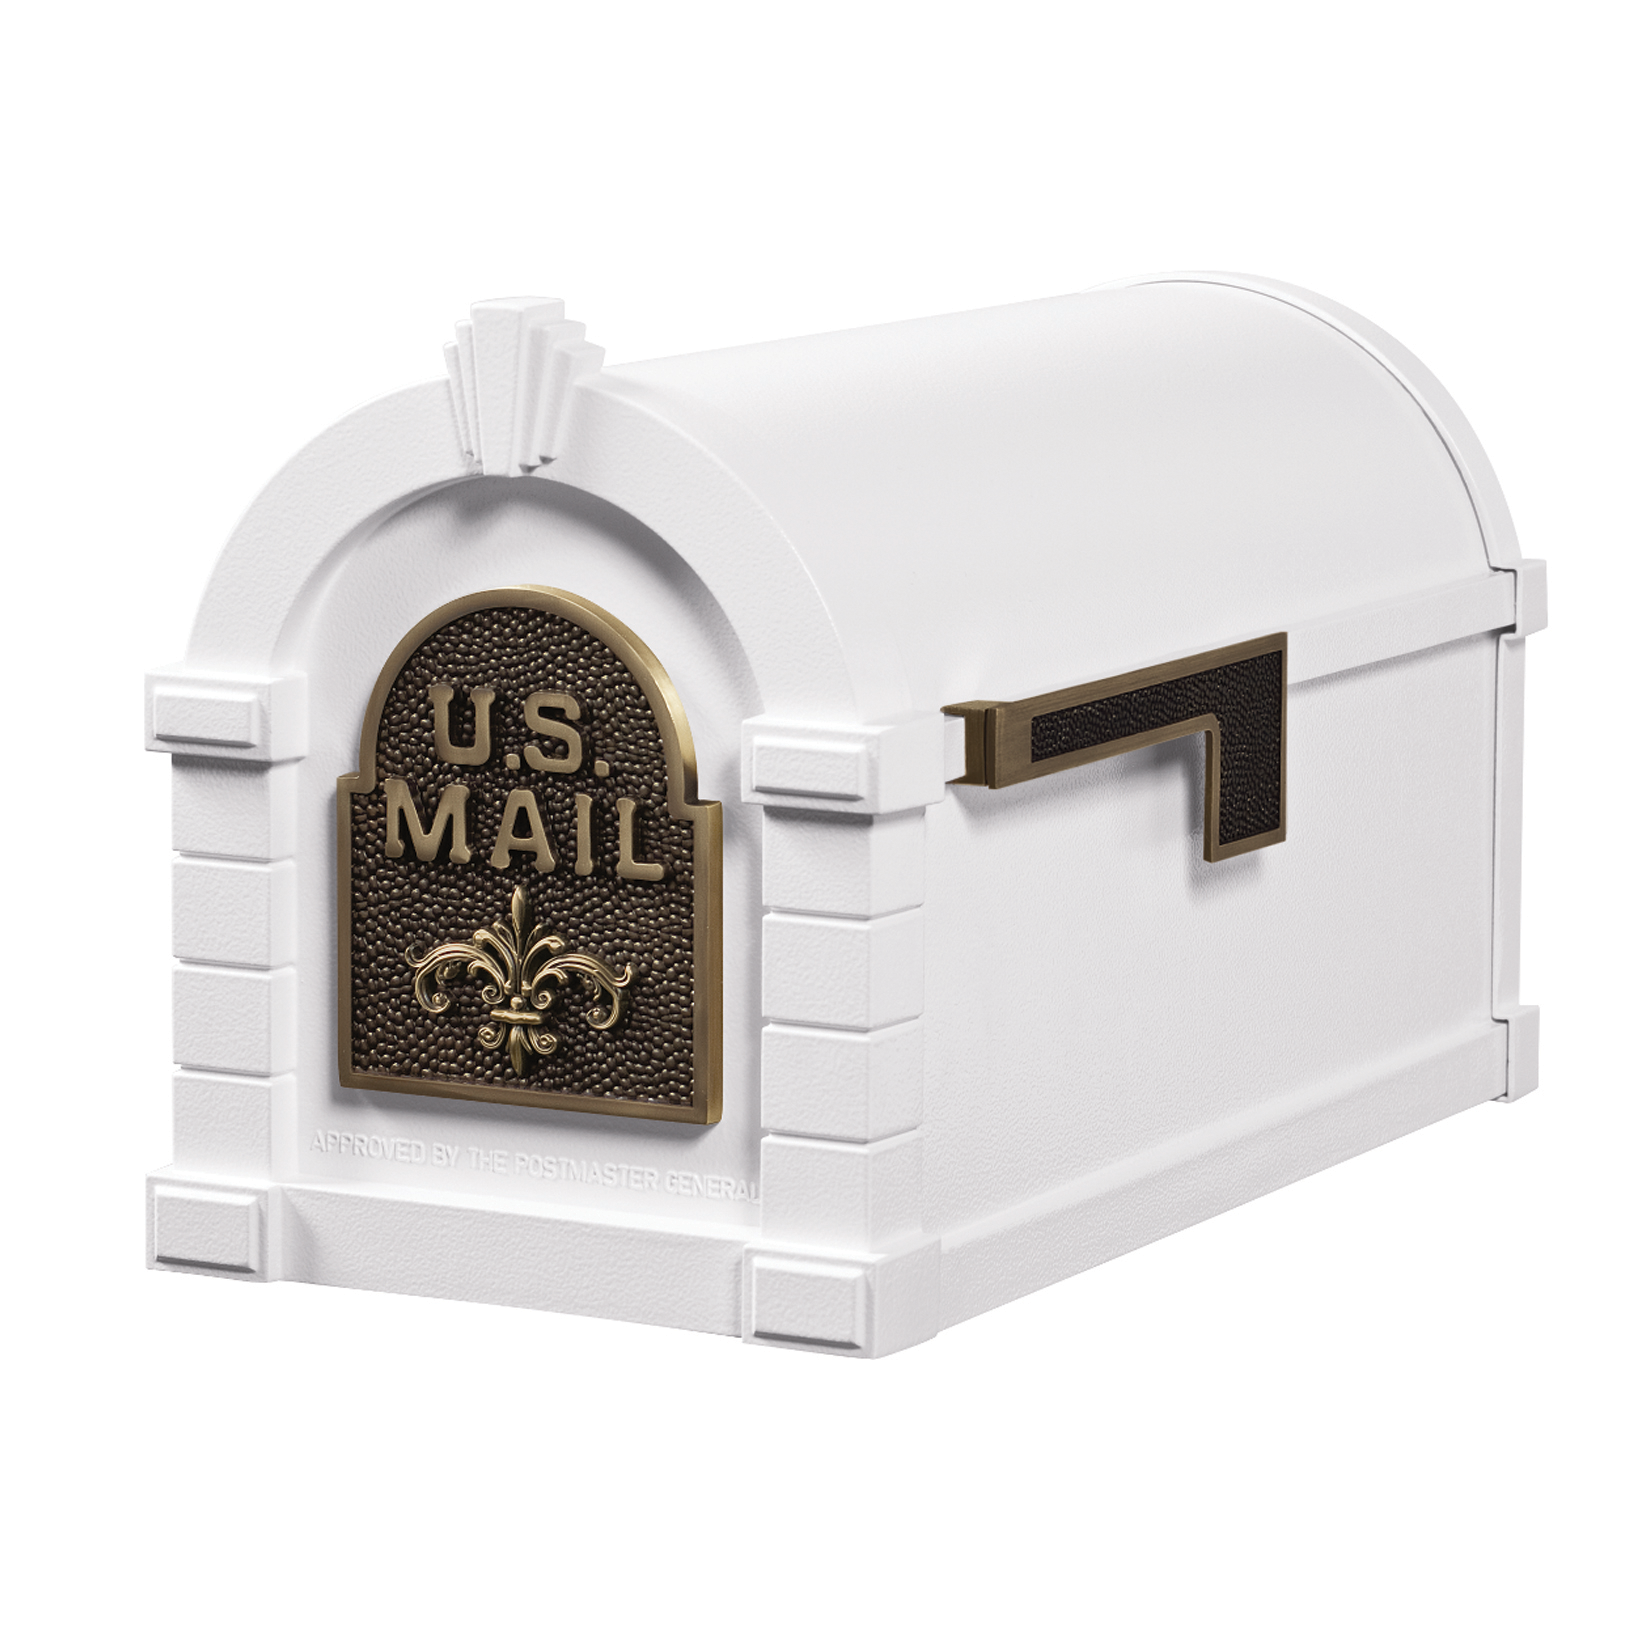 Gaines Fleur De Lis Keystone Mailboxes<br >White with Antique Bronze